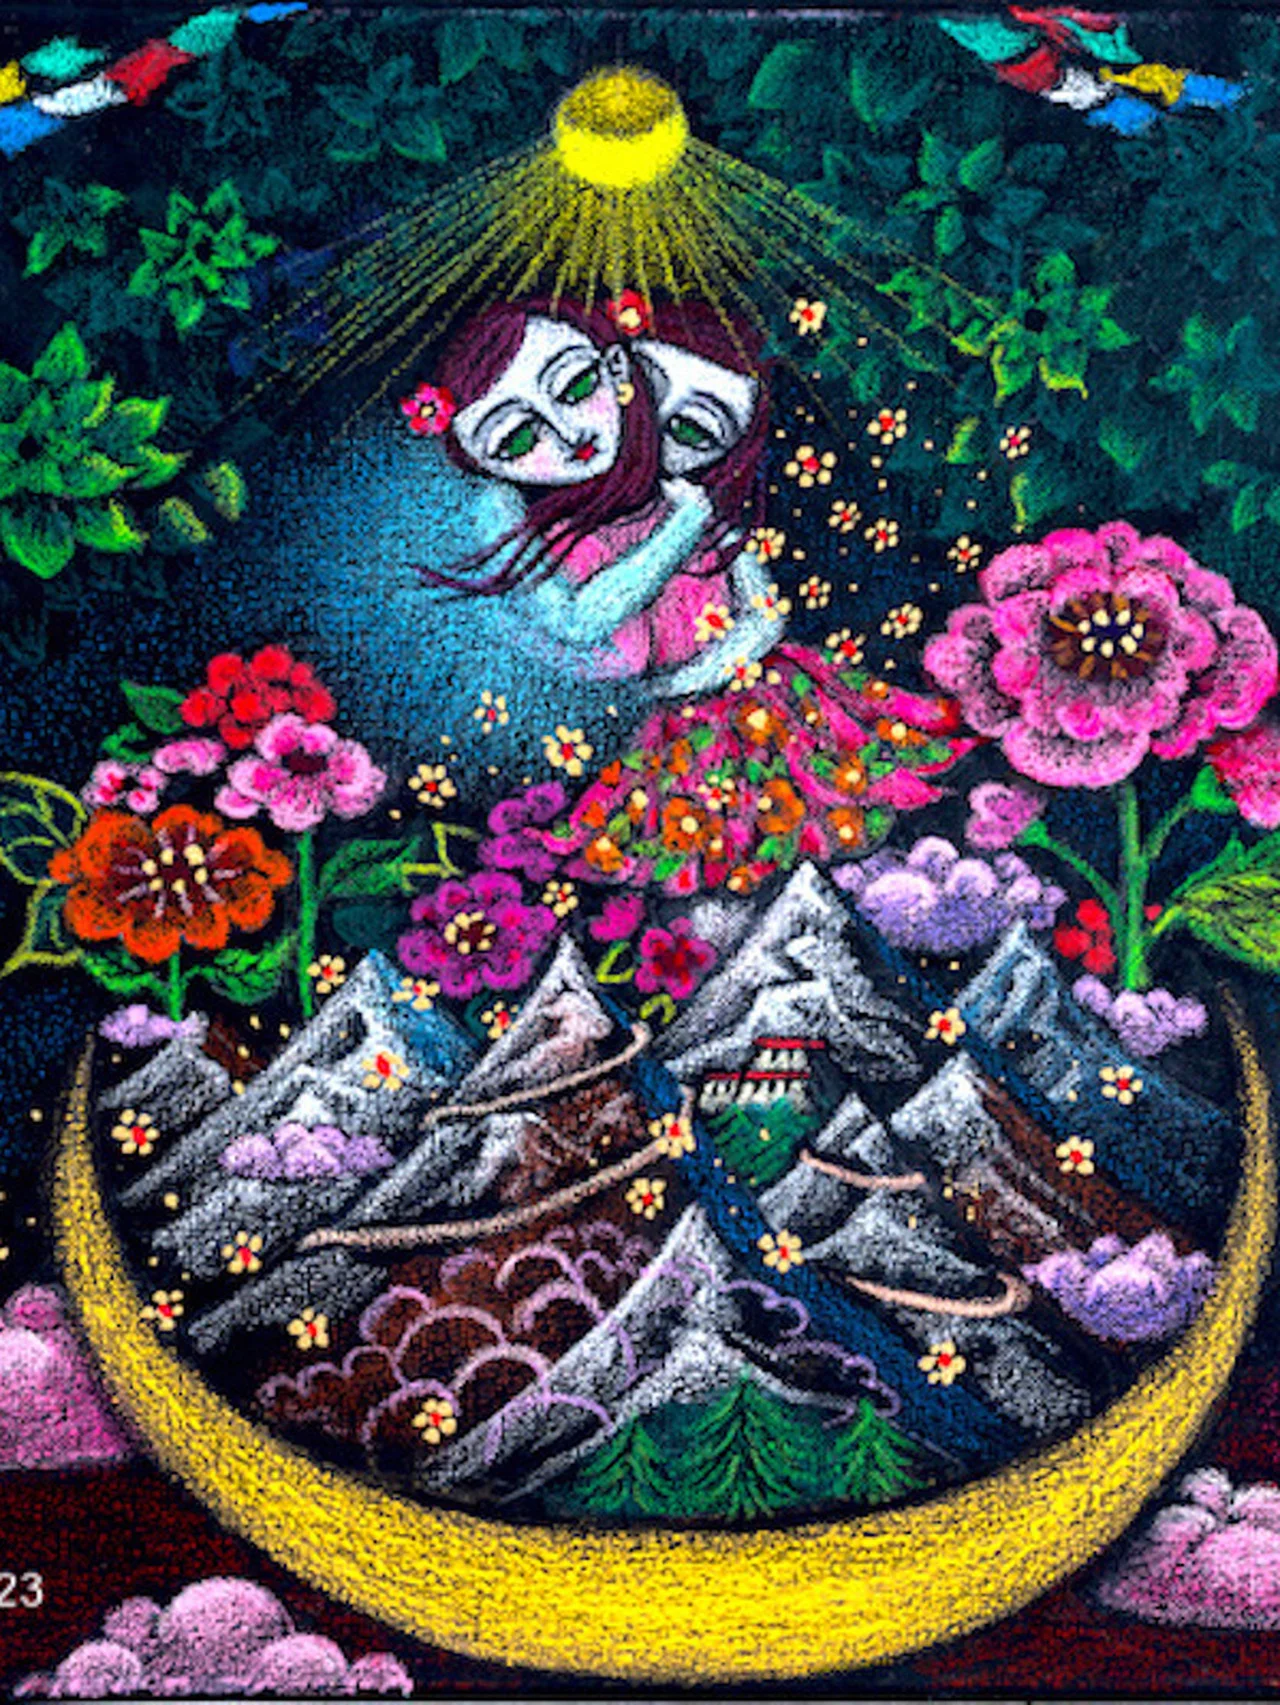 鮮やかな色彩の中に無限の愛を見る。藤田理麻30周年記念絵画個展「Spiral Upwards～無条件に～」開催